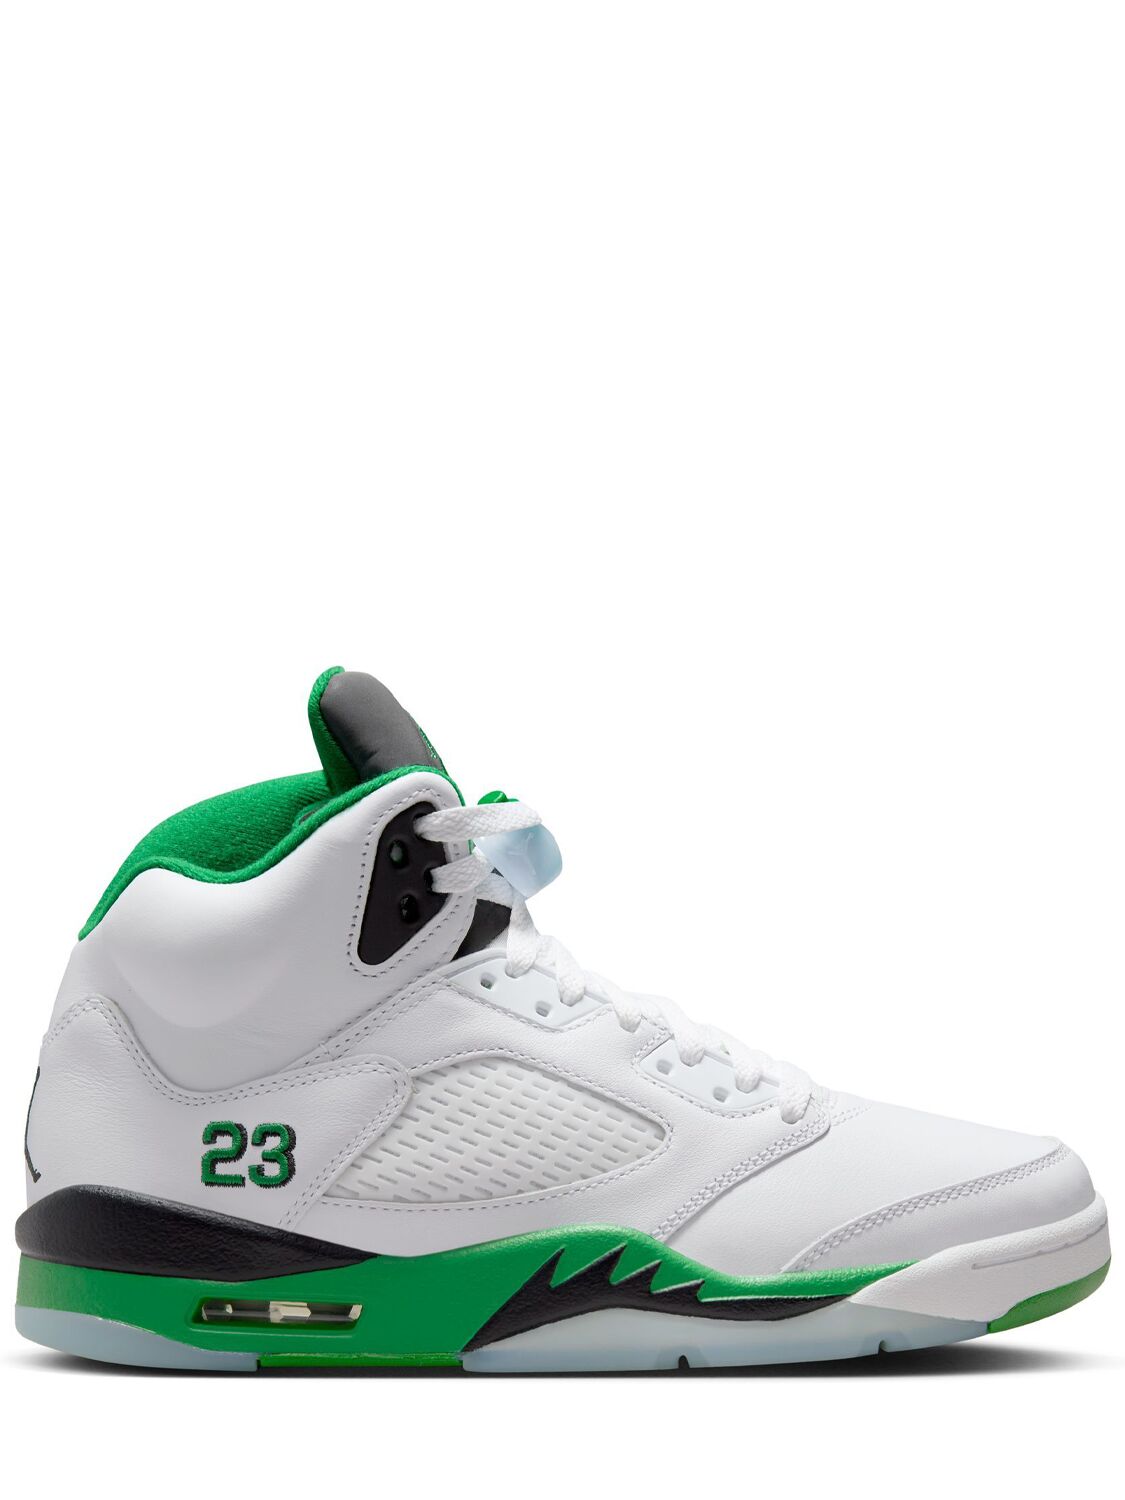 Image of Air Jordan 5 Retro Sneakers